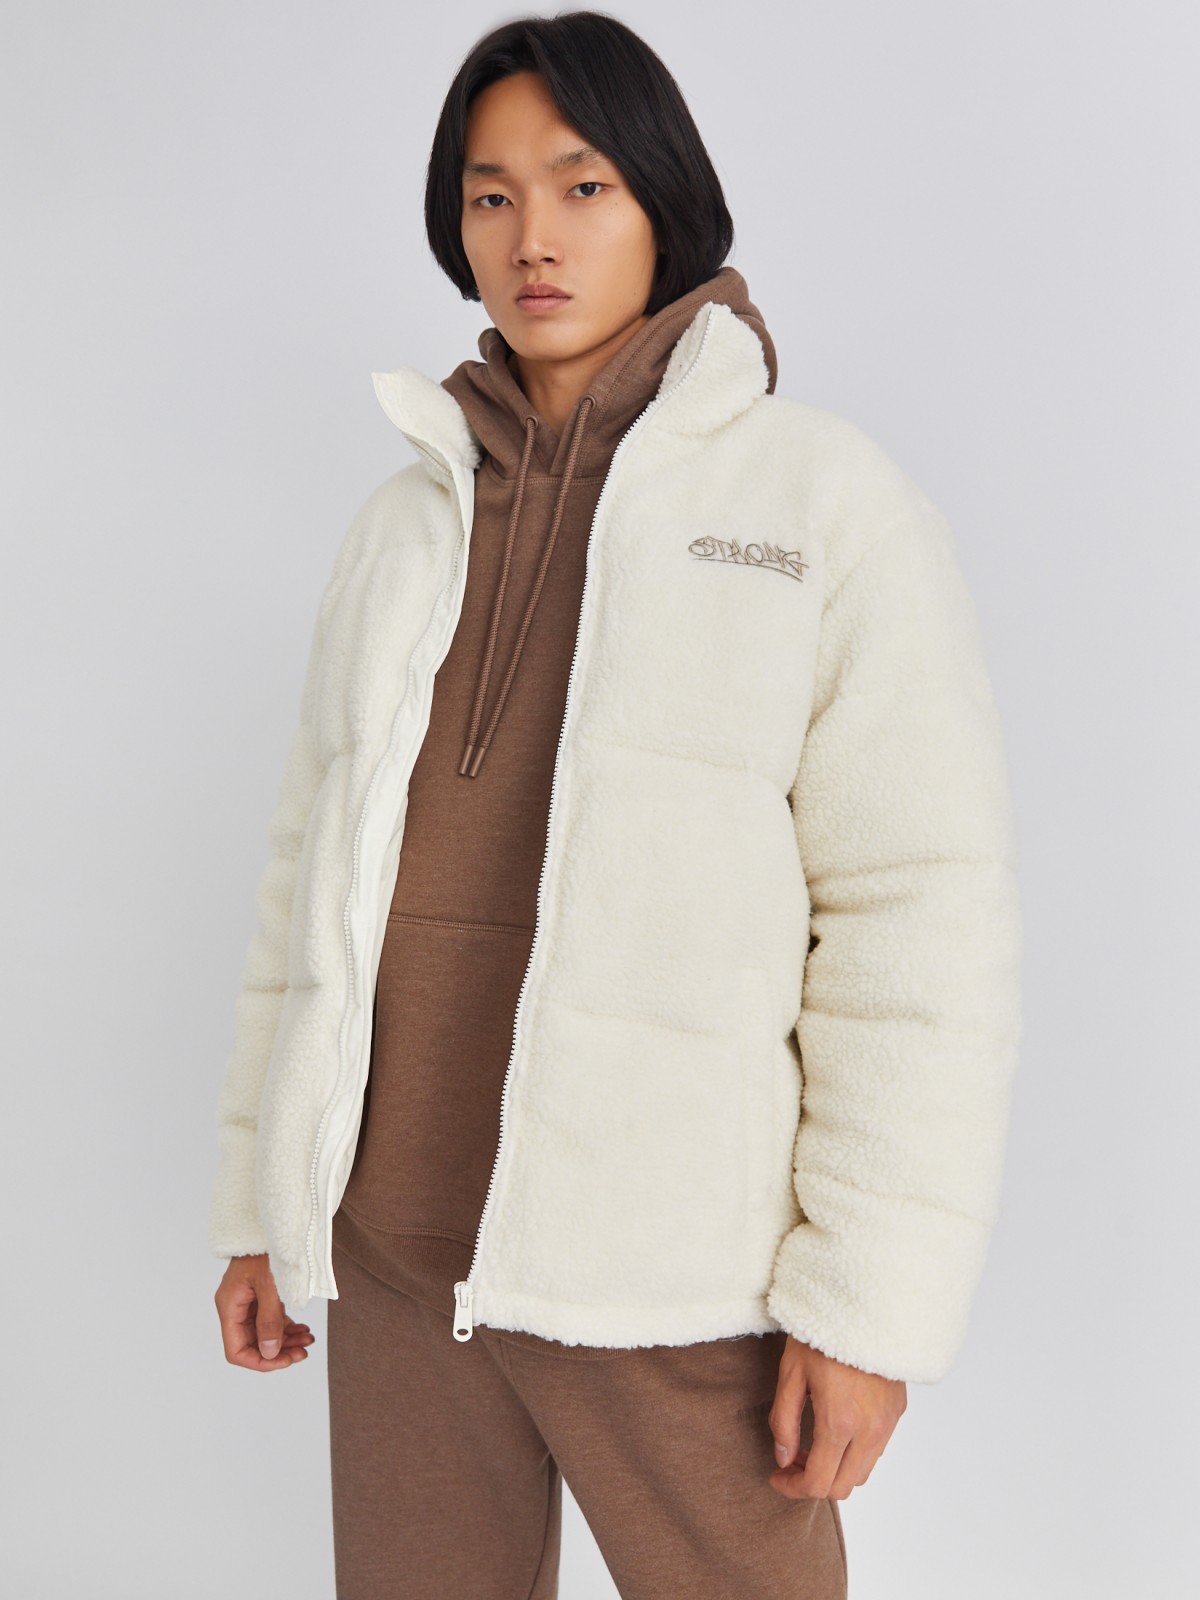 Тёплая куртка из экомеха с воротником-стойкой zolla 013425502024, цвет молоко, размер S/M